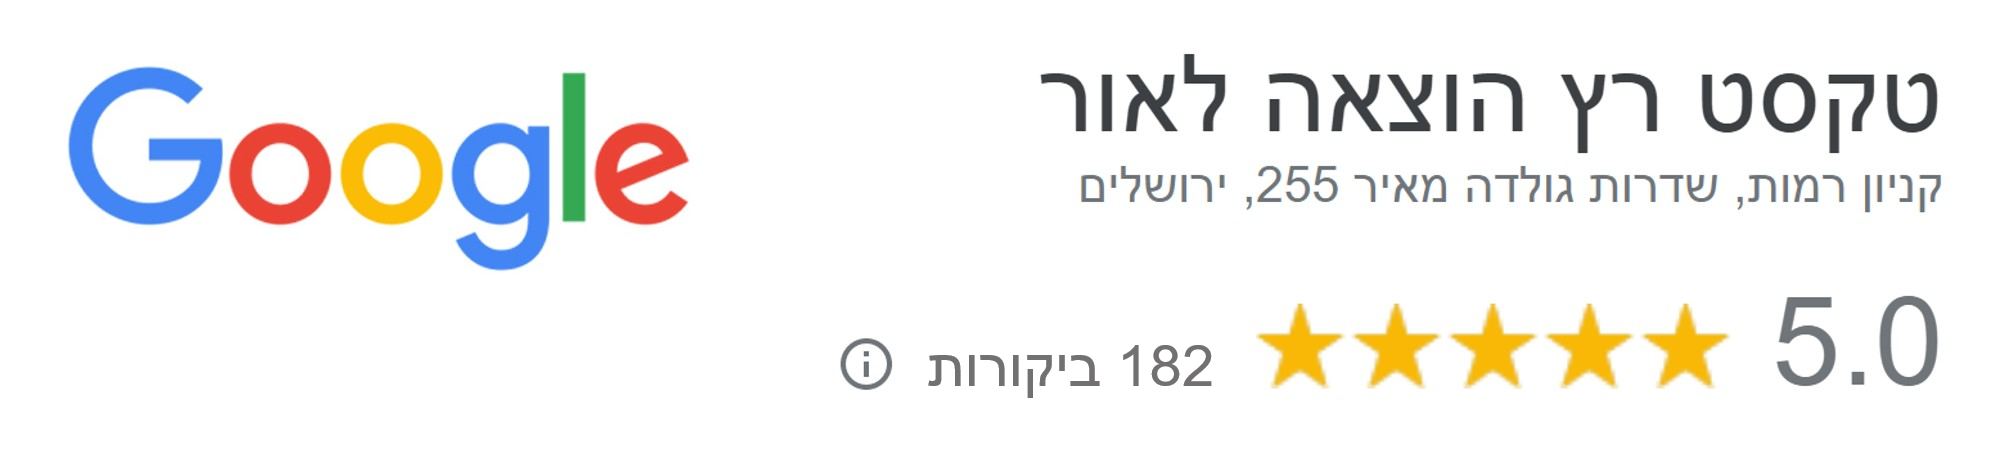 טקסט רץ הוצאה לאור קניון רמות, שד' גולדה מאיר 255, ירושלים 182 ביקורות google